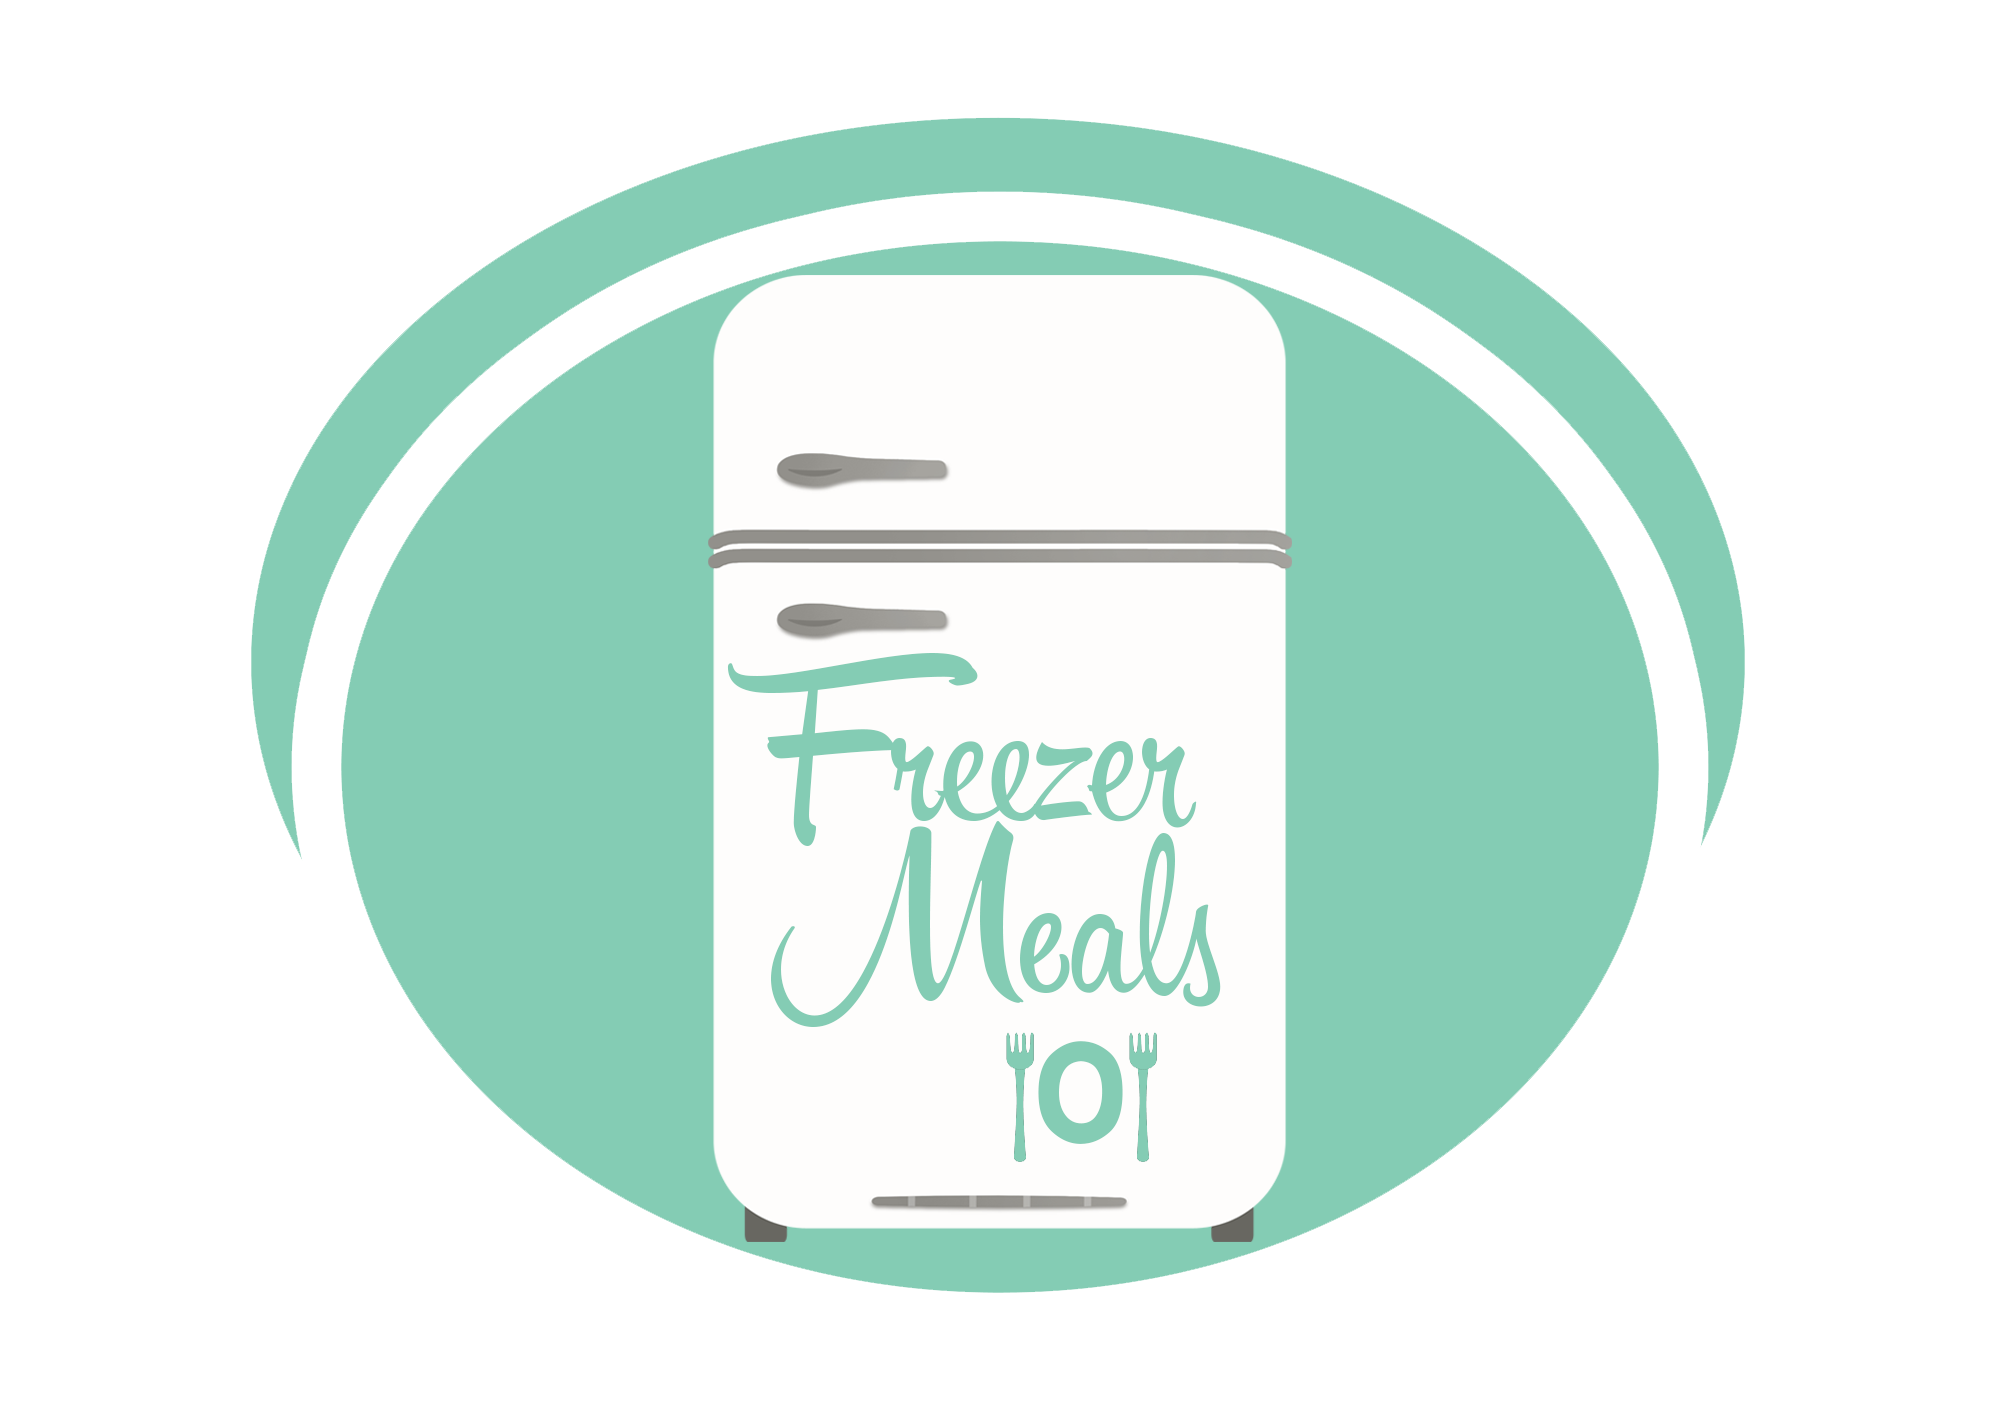 Freezer Meals 101 Club